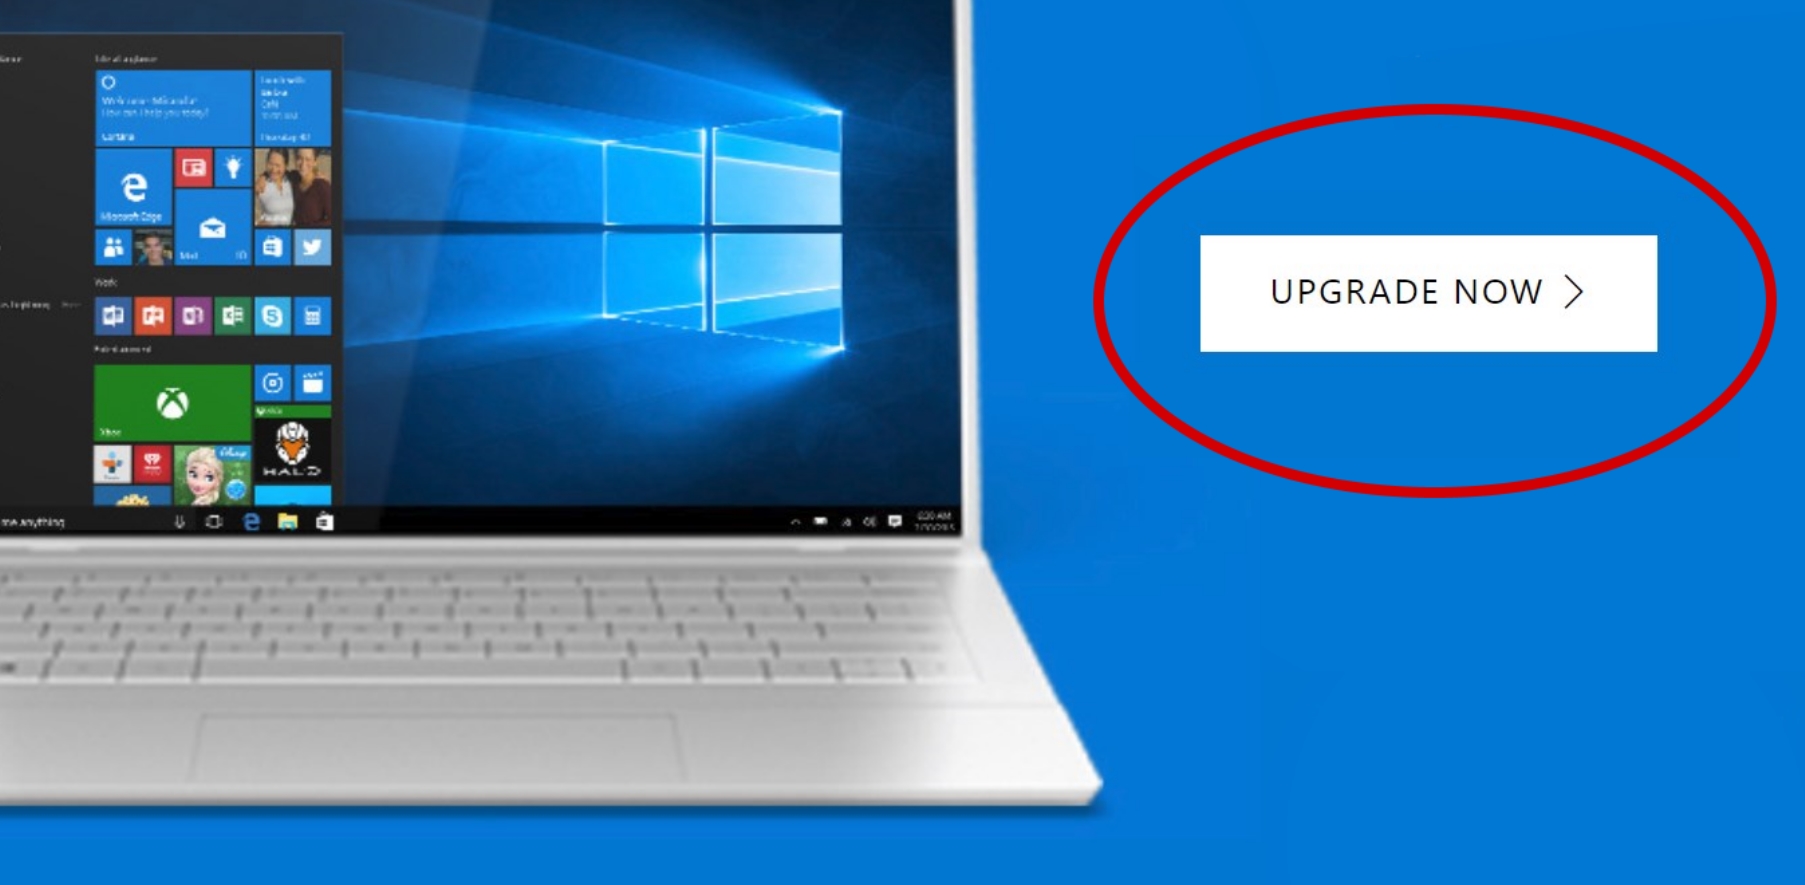 For å være på den sikre siden bør du oppgradere til Windows 10 før midnatt.